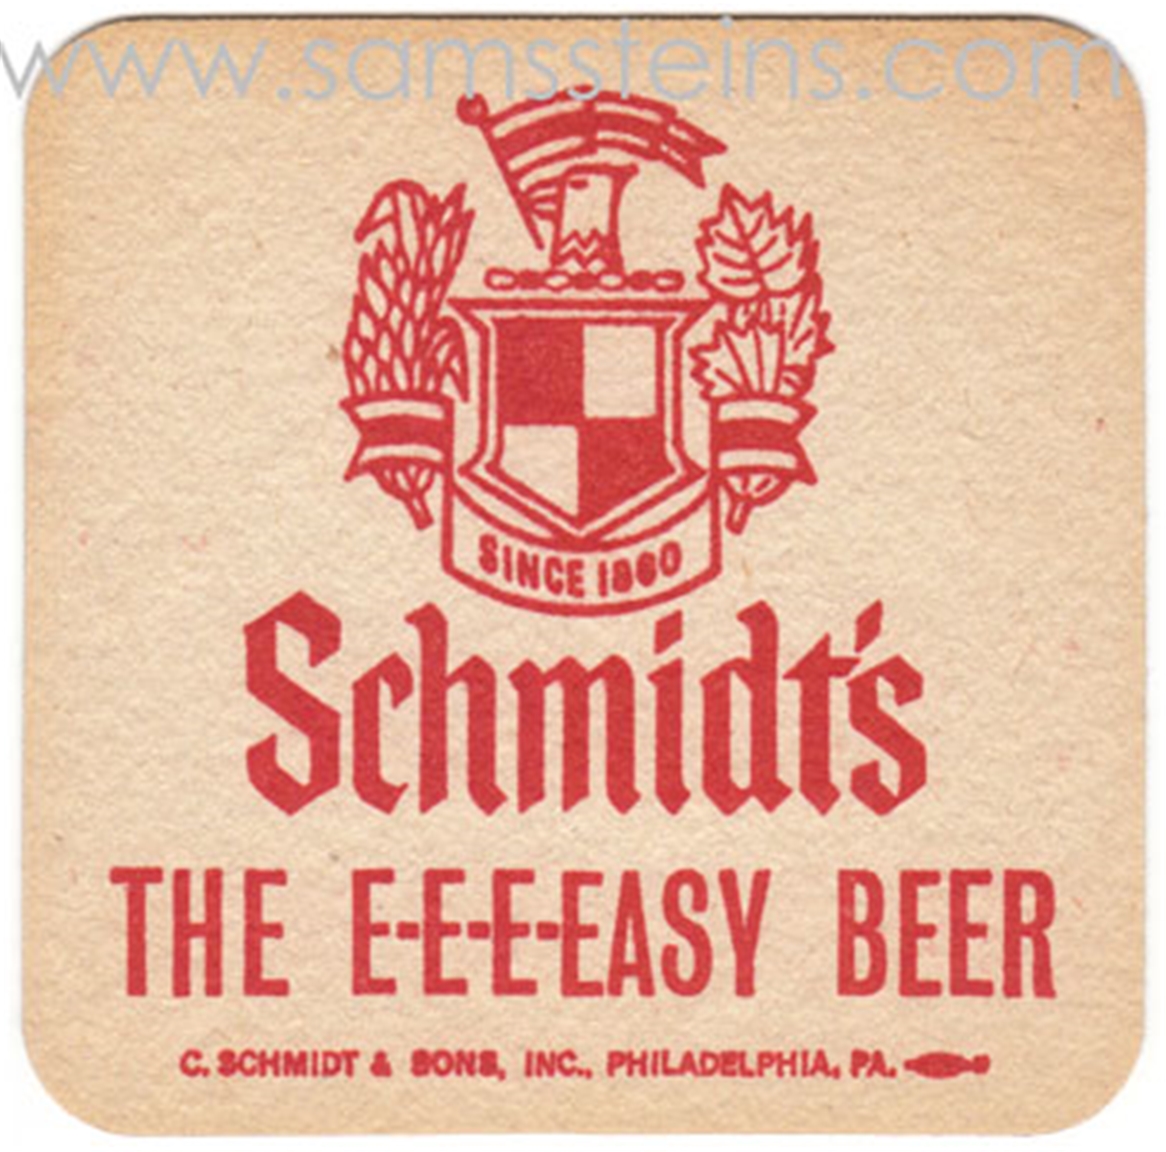 Schmidt's E-E-E-EASY Beer Coaster